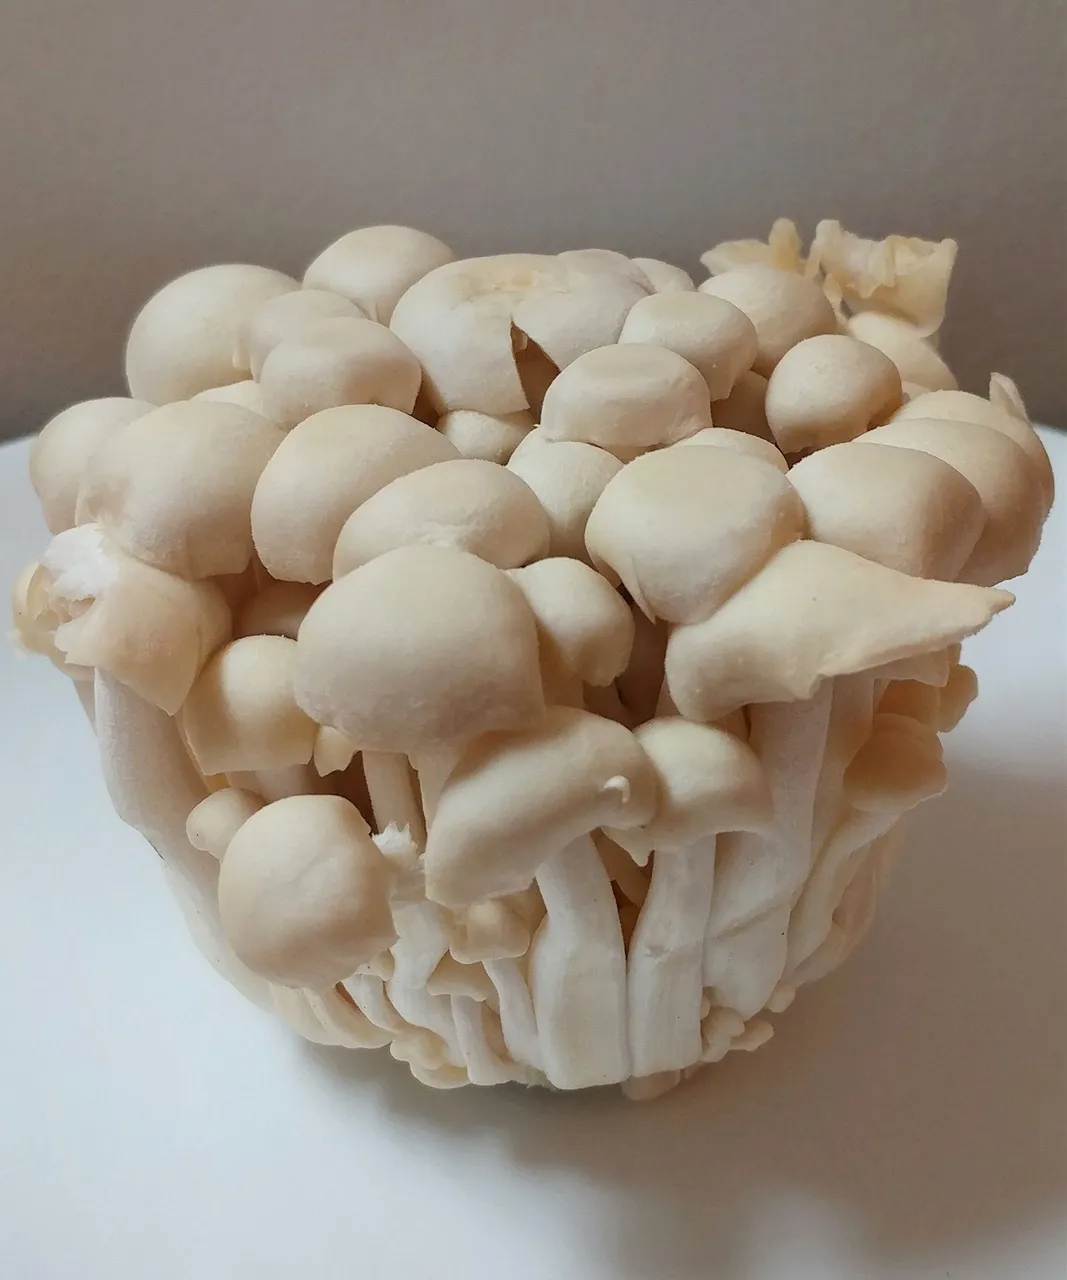 mushroommonday10-4-2021-1ok.jpg